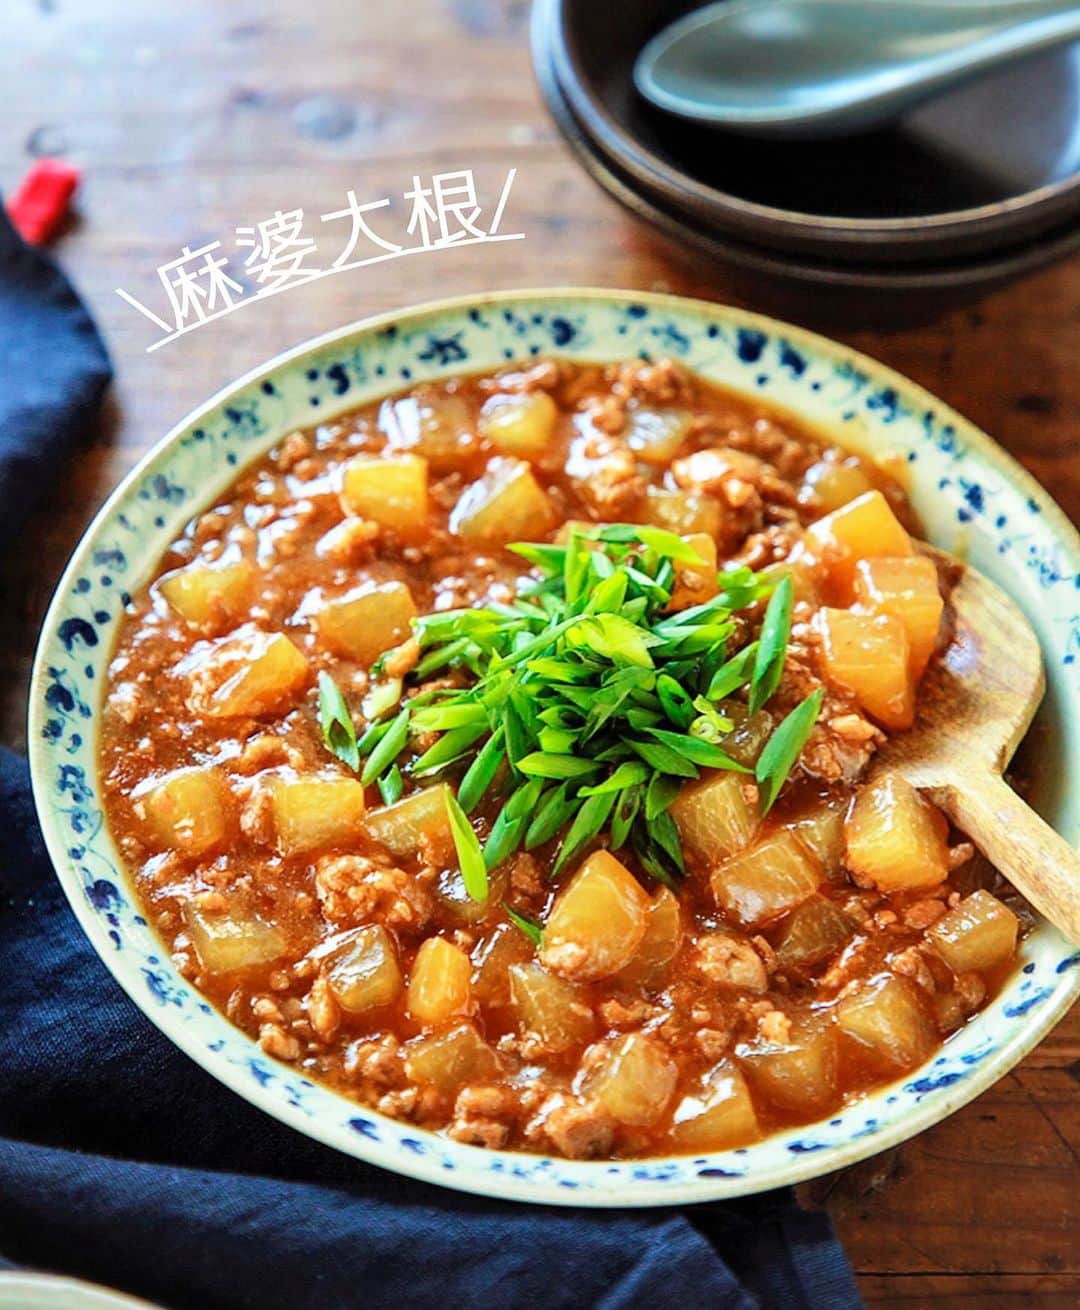 Mizuki【料理ブロガー・簡単レシピ】さんのインスタグラム写真 - (Mizuki【料理ブロガー・簡単レシピ】Instagram)「・﻿ 【#レシピ 】ーーーーーー﻿ ♡とろうま♡麻婆大根♡﻿ ーーーーーーーーーーーー﻿ ﻿ ﻿ ﻿ おはようございます(*^^*)﻿ ﻿ 今日はこの時期におすすめの﻿  \\ 麻婆大根 // のご紹介です♩﻿ ﻿ うま味たっぷりのひき肉餡と﻿ とろっとろの大根が相性抜群！﻿ 丼にしても美味しいですよ〜♡﻿ ﻿ フライパンひとつでできるので﻿ お気軽にお試し下さいね(*´艸`)﻿ ﻿ ﻿ ﻿ ＿＿＿＿＿＿＿＿＿＿＿＿＿＿＿＿＿＿＿＿﻿ 【2〜3人分】﻿ 豚ひき肉...150g﻿ 大根...1/3本(400g)﻿ ごま油...大1﻿ 豆板醤...小1/2﻿ ●水...300ml﻿ ●酒・醤油・味噌...各大1﻿ ●砂糖・鶏がらスープ...各小1﻿ ●にんにくチューブ...2cm﻿ 片栗粉...大1﻿ 万能ねぎ...適量﻿ ﻿ 1.大根は1.5cm角に切る。片栗粉を水大2(分量外)で溶いて水溶き片栗粉を作る。﻿ 2.フライパンにごま油、豆板醤、ひき肉、大根を入れ、中火にかけて炒める。大根が透き通ってきたら●を加え、蓋をして弱めの中火で12分程煮る。﻿ 3.大根が柔らかくなったら弱火にし、水溶き片栗粉を加えてとろみを付ける。器に盛り、斜め切りにしたねぎをのせる。﻿ ￣￣￣￣￣￣￣￣￣￣￣￣￣￣￣￣￣￣￣￣﻿ ﻿ ﻿ ﻿ ﻿ 《ポイント》﻿ ♦︎大根は透き通ってくるまでしっかり炒めて下さい♩﻿ ♦︎水溶き片栗粉を加える時は必ず弱火にし、手早く混ぜてとろみを付けて下さい♩﻿ ♦︎合わせ味噌(マルコメ)を使用しています♩﻿ ♦︎辛さは控えめですが、お好みで豆板醤なしでも美味しいです♩﻿ ﻿ ﻿ ﻿ ﻿ ﻿ ﻿ ﻿ ﻿ 📕新刊発売中📕﻿ 【ラクしておいしい！#1品晩ごはん 】﻿ ￣￣￣￣￣￣￣￣￣￣￣￣￣￣￣￣￣﻿ 私たちだってヘトヘトな日がある•••﻿ 毎日何品も作っていられない•••﻿ もうごはんに悩みたくない😢﻿ そんな時、1品ごはんはいかがでしょう？﻿ というご提案です✨﻿ ﻿ 【1品ごはん】は﻿ 副菜いらずで全てがシンプル！﻿ ￣￣￣￣￣￣￣￣￣￣￣￣￣￣￣￣￣￣﻿ 一品つくるだけでいいから﻿ 献立を考えなくてよし！﻿ ￣￣￣￣￣￣￣￣￣￣￣￣￣￣￣￣￣￣﻿ 悩まない、疲れない、﻿ 気力や時間がなくてもなんとかなる！﻿ ￣￣￣￣￣￣￣￣￣￣￣￣￣￣￣￣￣￣﻿ そんな頼りになる﻿ 便利なお助けごはんです☺️💕﻿ (ハイライトに🔗貼っています✨)﻿ ￣￣￣￣￣￣￣￣￣￣￣￣￣￣￣￣￣﻿ ﻿ ﻿ ﻿ ﻿ ﻿ ⭐️発売中⭐️﻿ ＿＿＿＿＿＿＿＿＿＿＿＿＿＿＿＿＿＿﻿ しんどくない献立、考えました♩﻿ \15分でいただきます/﻿ 📕#Mizukiの2品献立 📕﻿ ﻿ 和食をもっとカジュアルに♩﻿ \毎日のごはんがラクになる/﻿ 📘#Mizukiの今どき和食 📘﻿ ﻿ ホケミレシピの決定版♩﻿ \はじめてでも失敗しない/﻿ 📙#ホットケーキミックスのお菓子 📙﻿ ﻿ NHKまる得マガジンテキスト☆﻿ ホットケーキミックスで﻿ 📗絶品おやつ&意外なランチ📗﻿ ￣￣￣￣￣￣￣￣￣￣￣￣￣￣￣￣￣￣﻿ ﻿ ﻿ ﻿ ＿＿＿＿＿＿＿＿＿＿＿＿＿＿＿＿＿＿﻿ レシピを作って下さった際や﻿ レシピ本についてのご投稿には﻿ タグ付け( @mizuki_31cafe )して﻿ お知らせいただけると嬉しいです😊💕﻿ ￣￣￣￣￣￣￣￣￣￣￣￣￣￣￣￣￣￣﻿ ﻿ ﻿ ﻿ ﻿ #麻婆大根#大根#マーボー#ひき肉#Mizuki#簡単レシピ#時短レシピ#節約レシピ#料理#フーディーテーブル#マカロニメイト#おうちごはん#デリスタグラマー#料理好きな人と繋がりたい#おうちごはんlover#写真好きな人と繋がりたい#foodpic#cooking#recipe#lin_stagrammer#foodporn#yummy#f52grams#麻婆大根m」1月13日 7時01分 - mizuki_31cafe